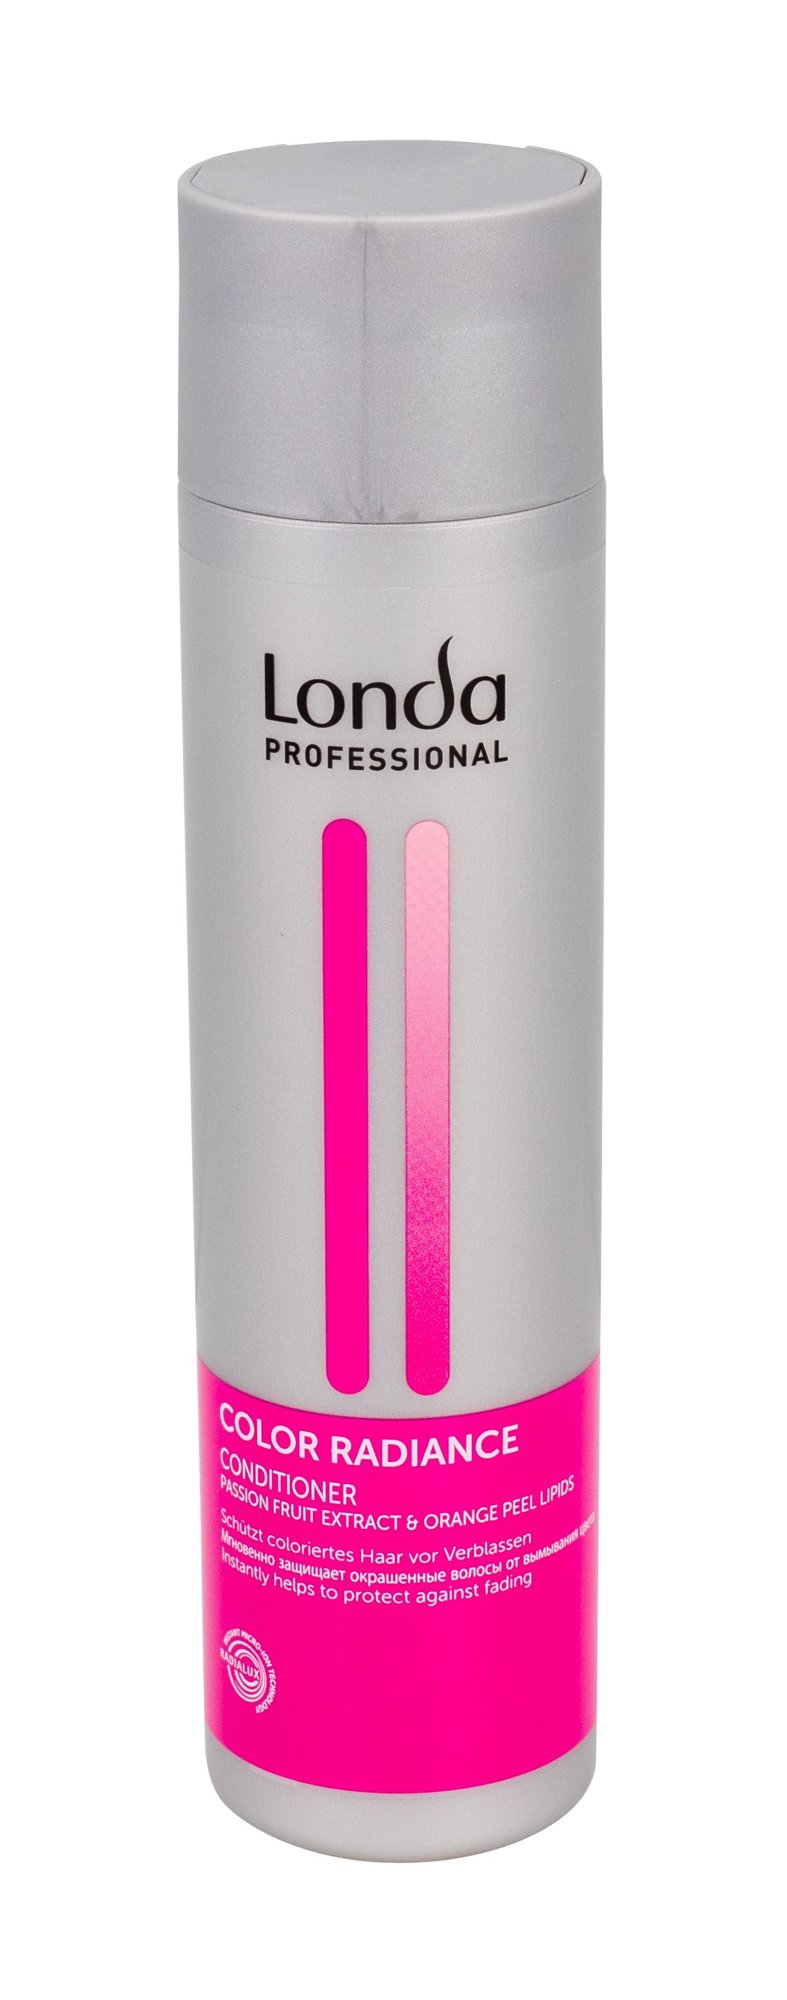 Londa Professional Color Radiance kondicionierius